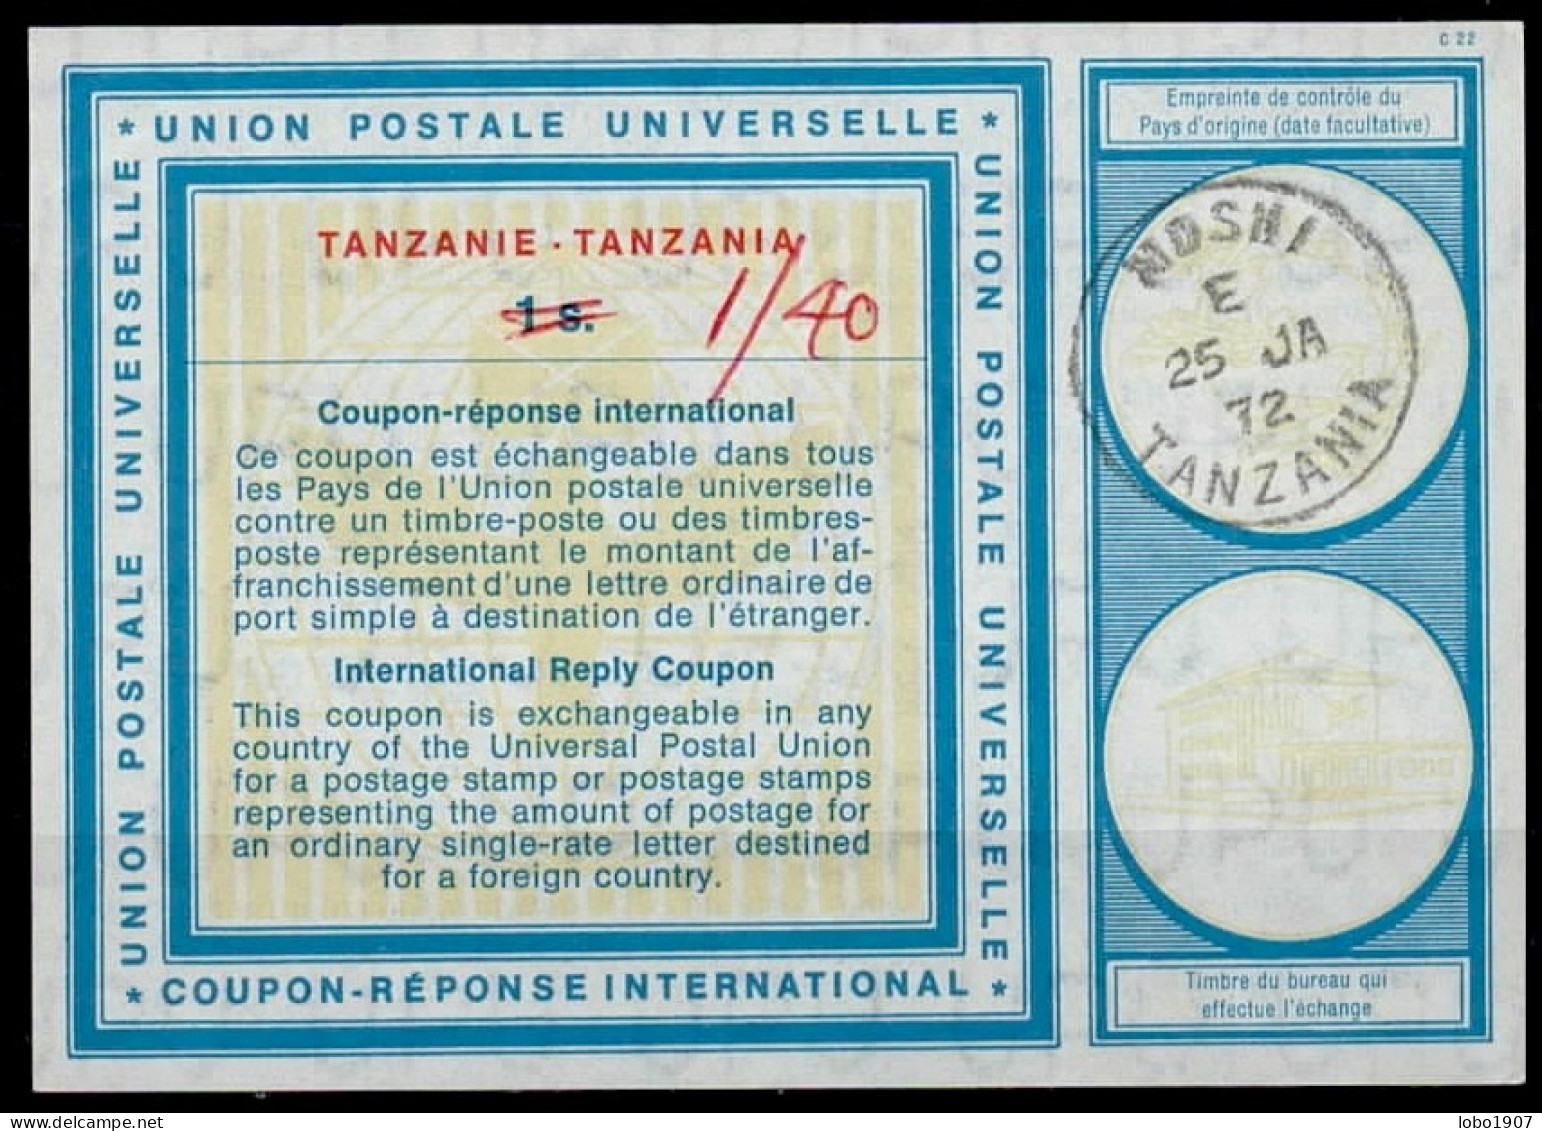 TANZANIE TANZANIA  Vi19  1/40 On 1s.  International Reply Coupon Reponse Antwortschein IRC IAS  MOSCHI 25.01.72 - Tansania (1964-...)